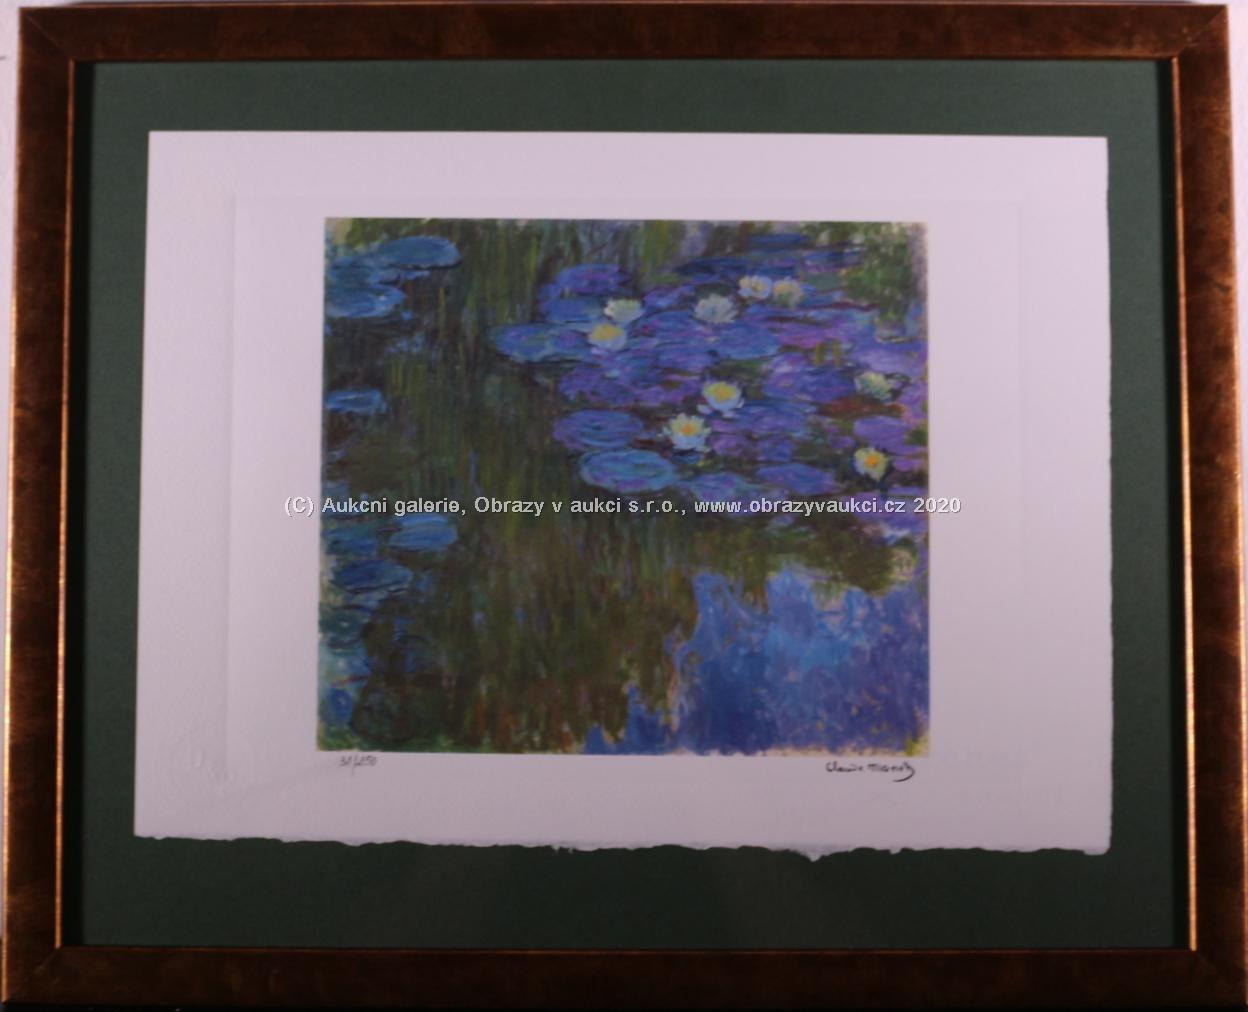 Claude Monet - Blue Water Lillies